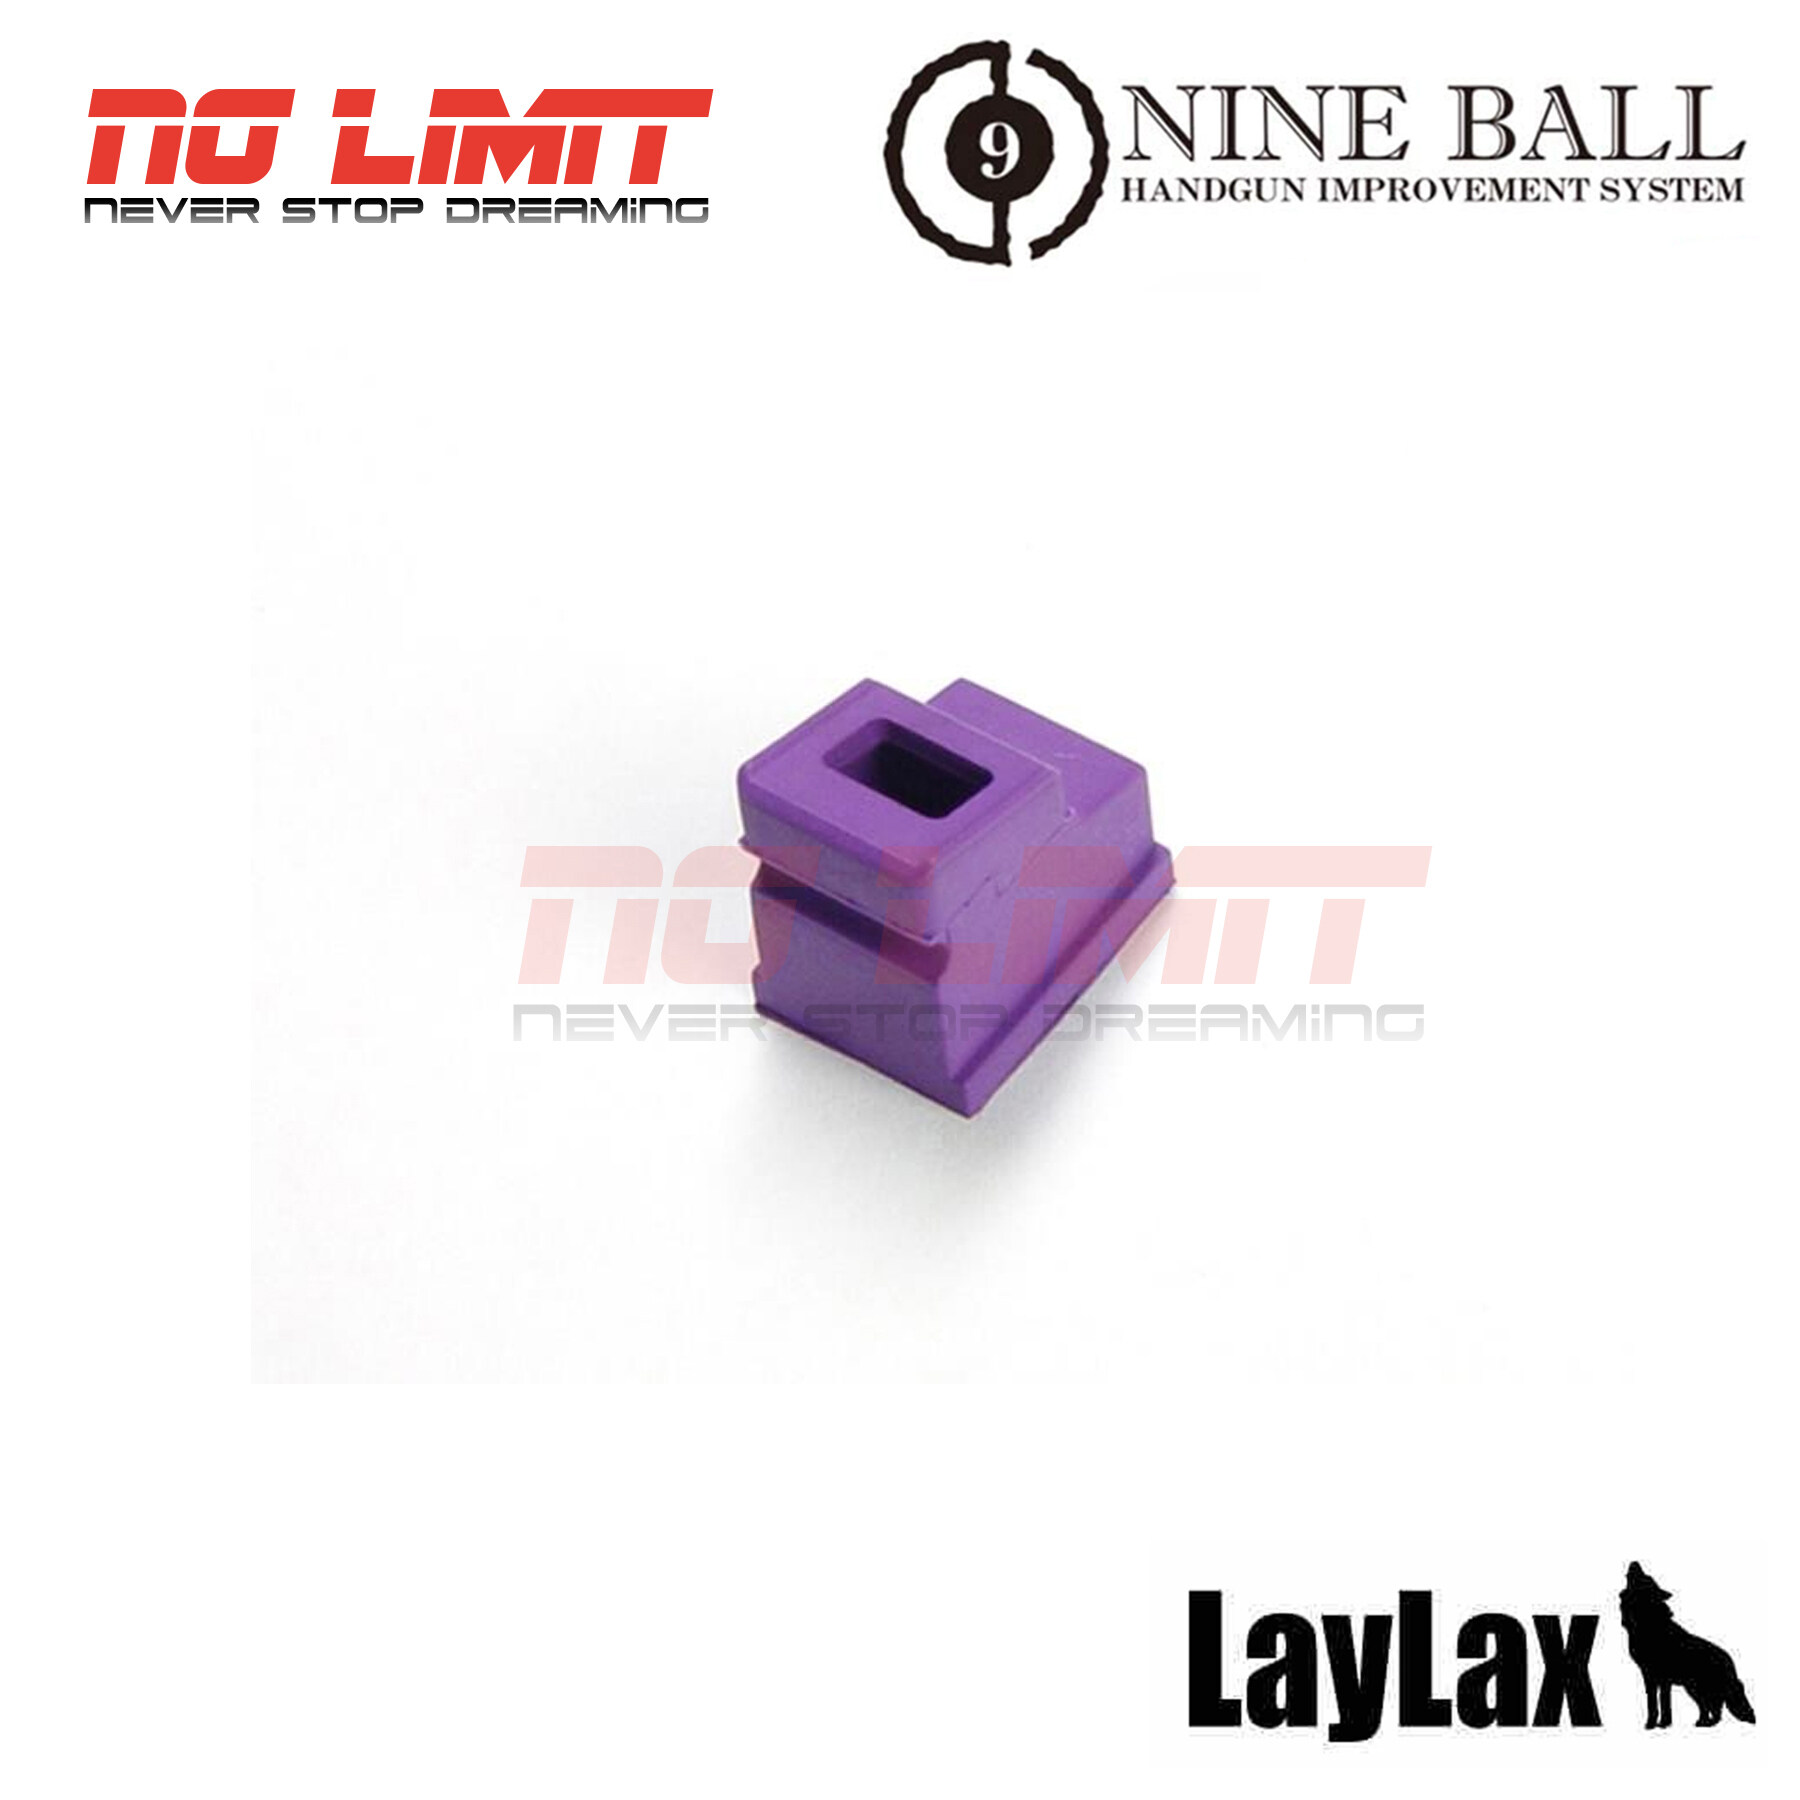 ยางปากแม็ก อัพเกรด Laylax Nine Ball Enhanced Rubber Magazine Gasket สำหรับ Tokyo Marui Hi-Capa 5.1 / 4.3 / P226 Made In Japan สินค้าคุณภาพ ได้ตามภาพตัวอย่าง ถ่ายจากสินค้าจริง อะไหล่บีบีกัน ชิ้นส่วนอัพเกรด. 